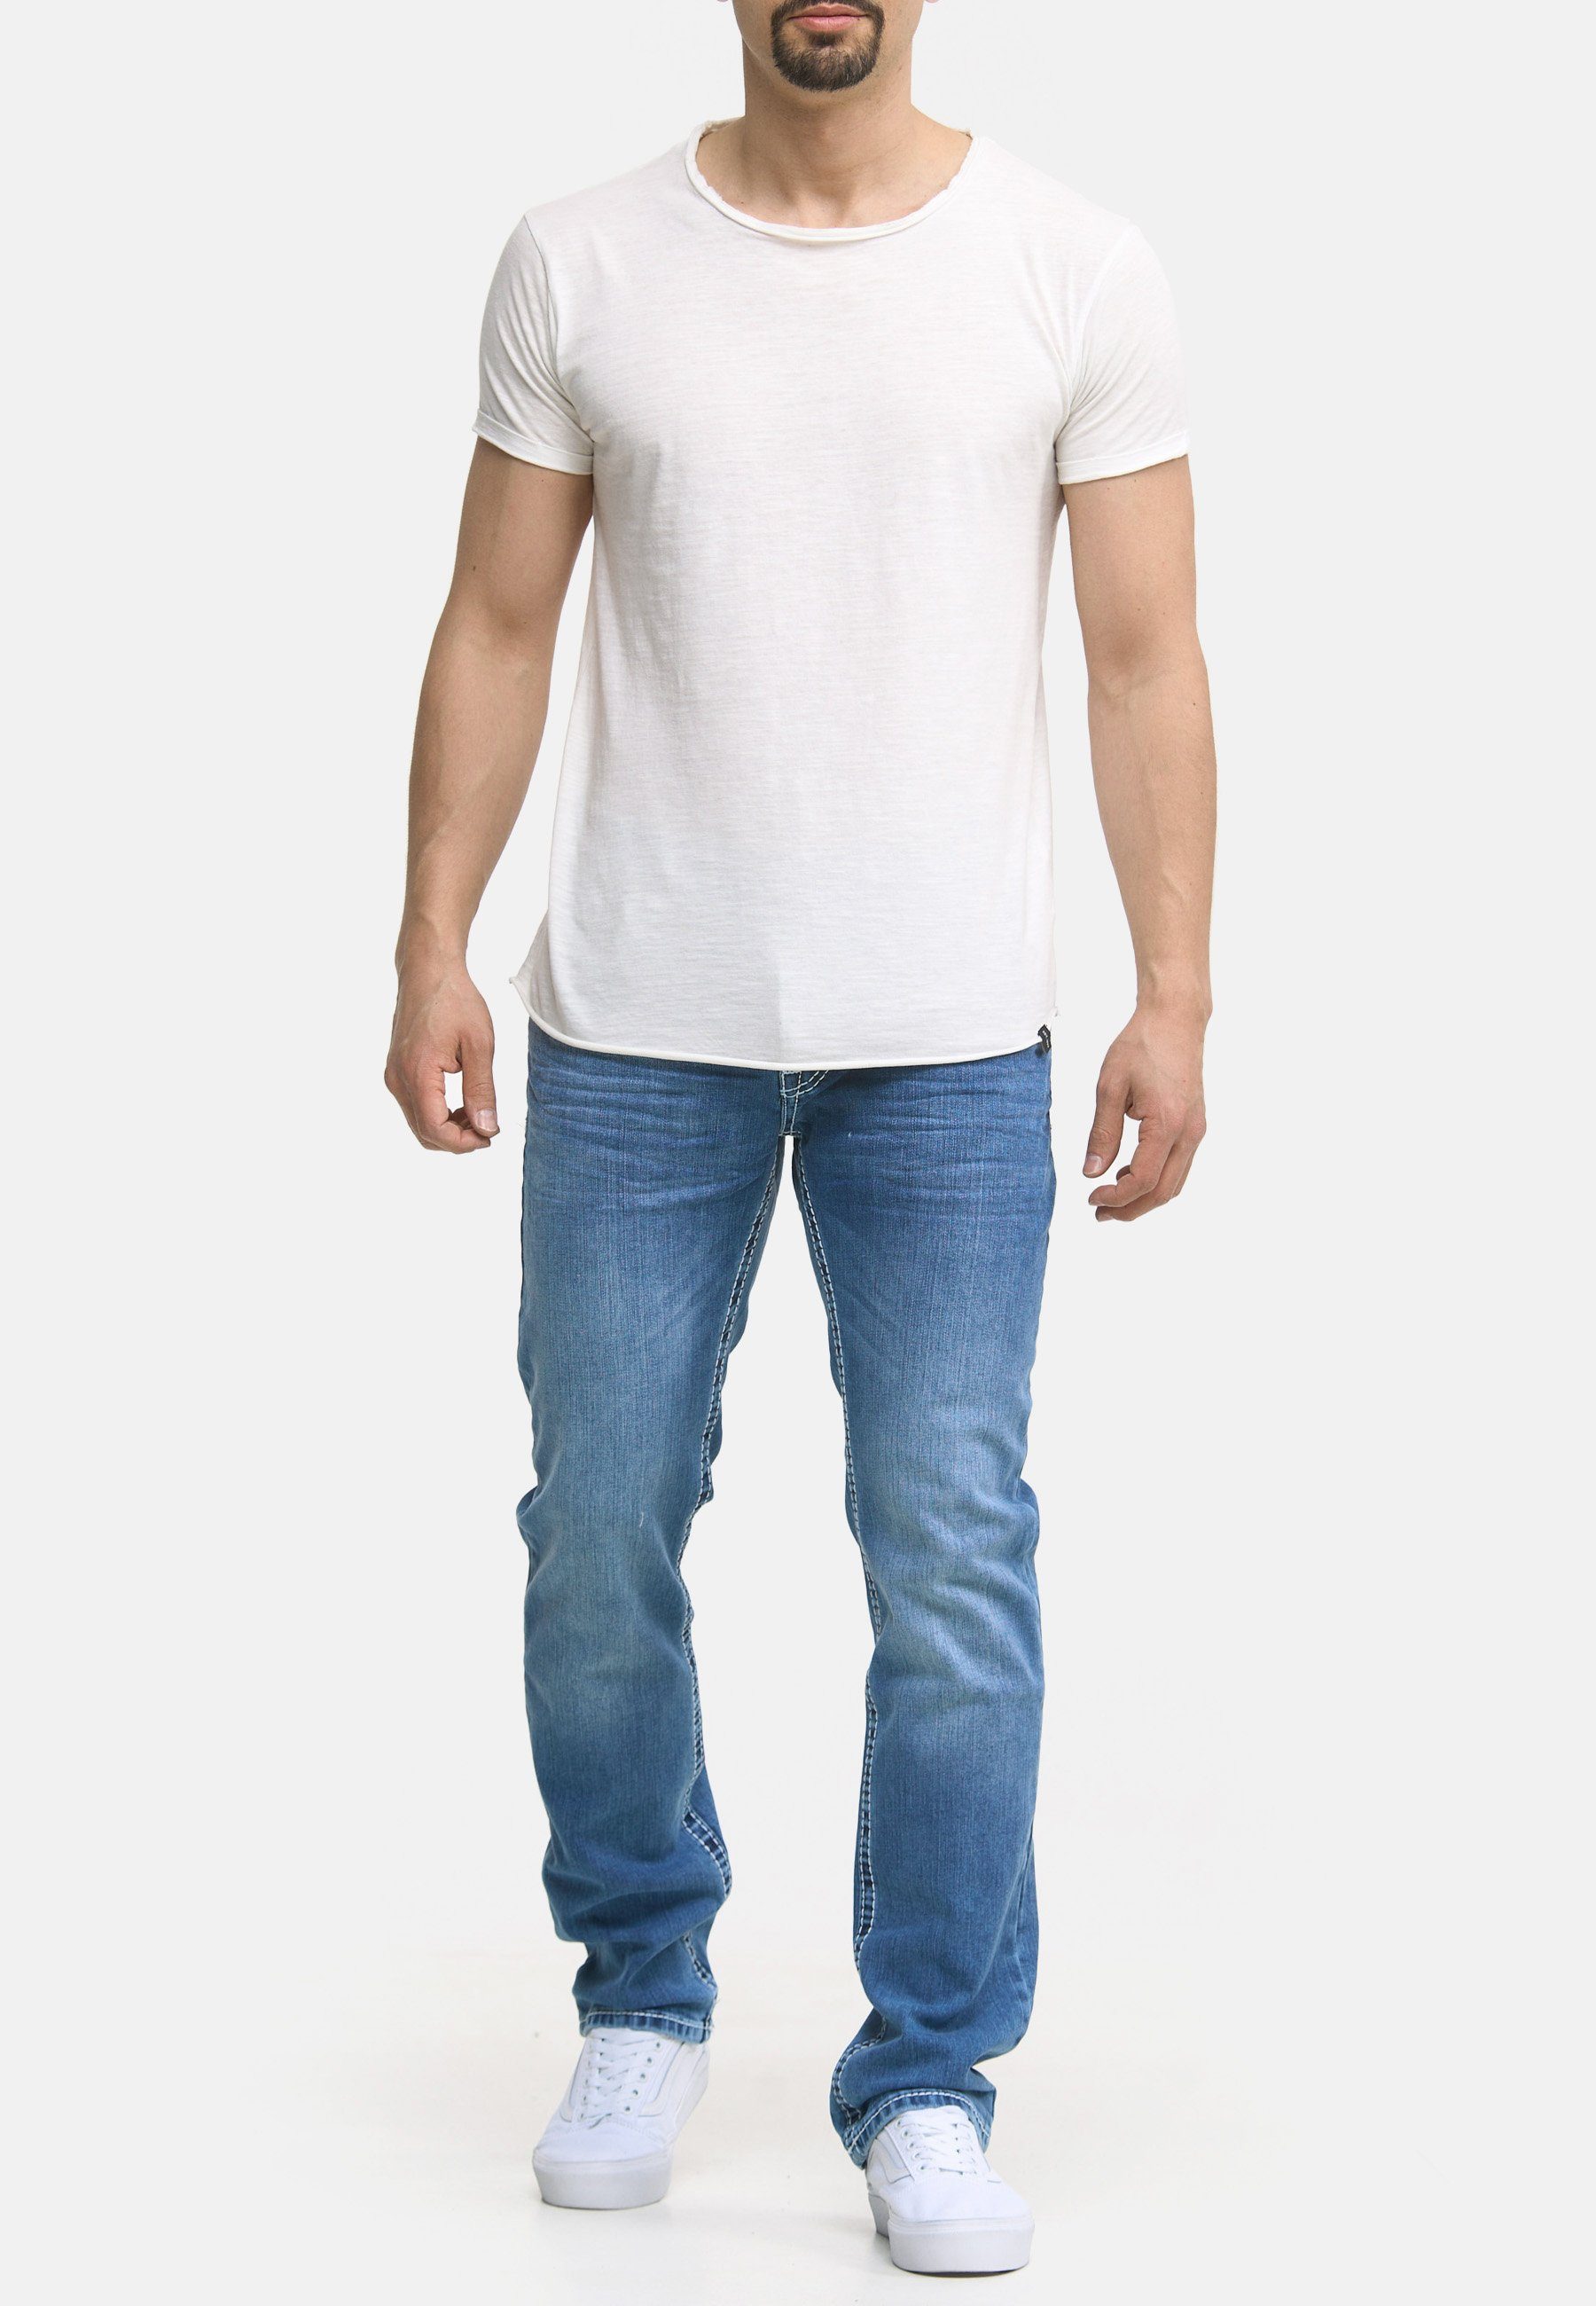 Denim Jeans 904 Herren blue Code47 Bootcut Regular-fit-Jeans light Five Männer Pocket Fit Code47 Hose Regular